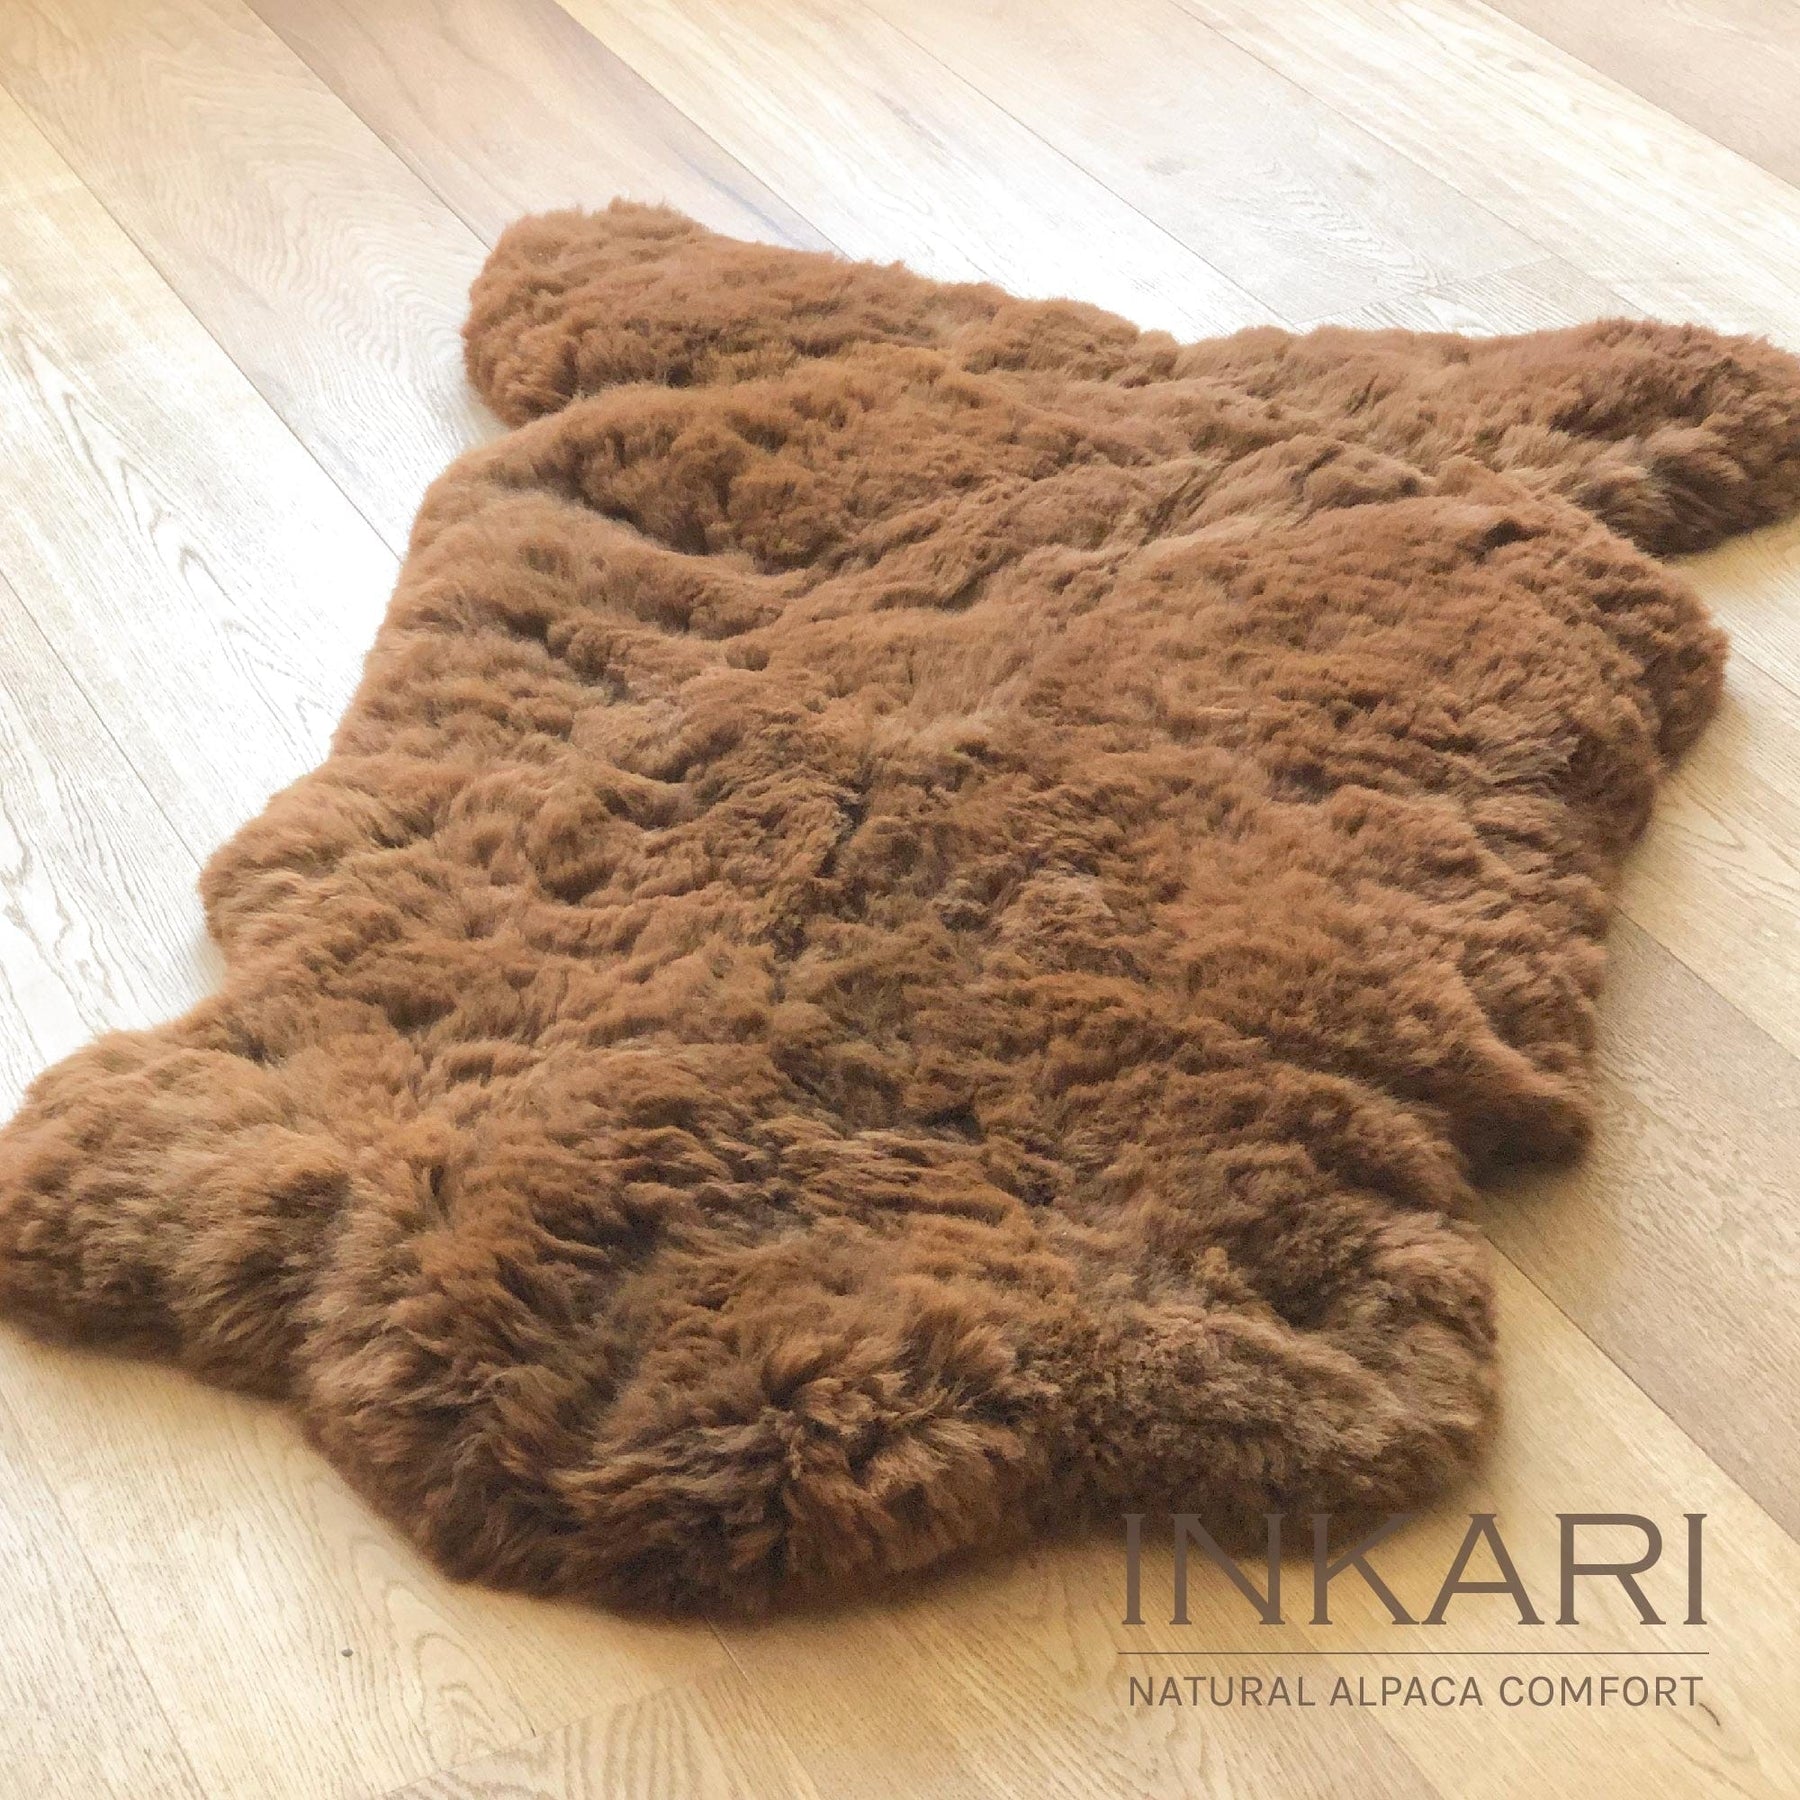 Reina - Handmade Alpaca Rug - Walnut - alpaca wool - alpaca products & gifts - handmade - fairtrade gifts - by Inkari